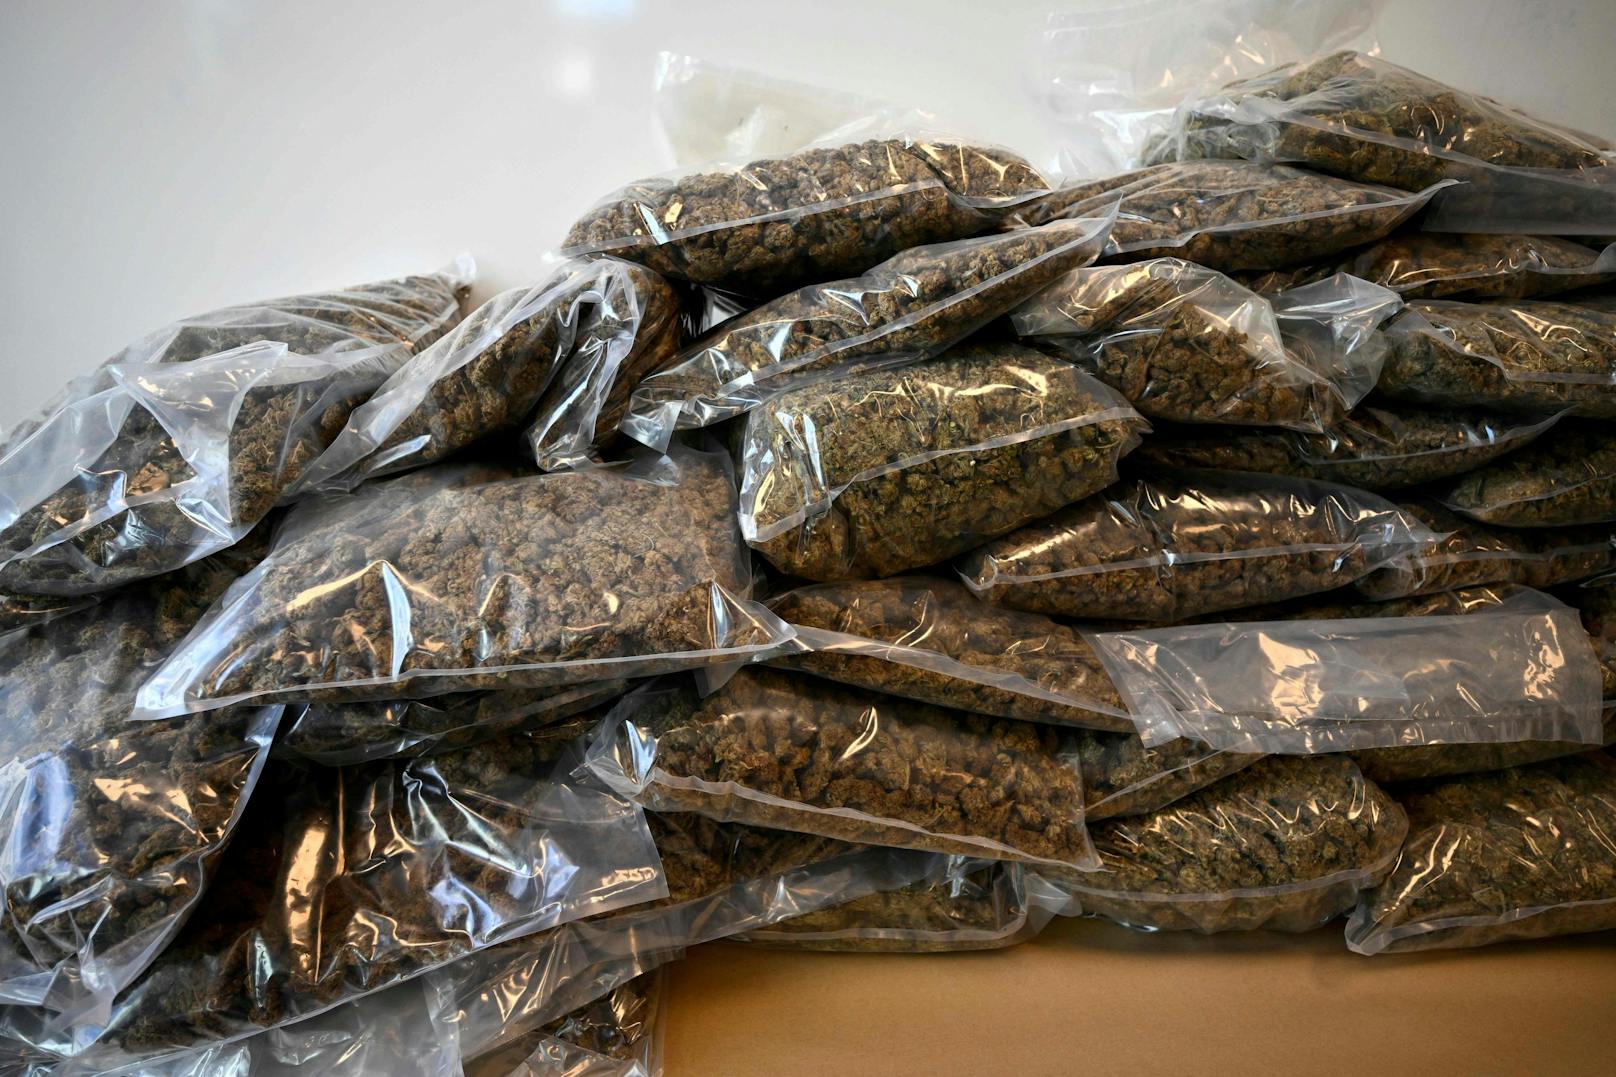 RDas in Marokko gefundene Cannabis war in Attrappen von Obst und Gemüse versteckt. (Archivbild)